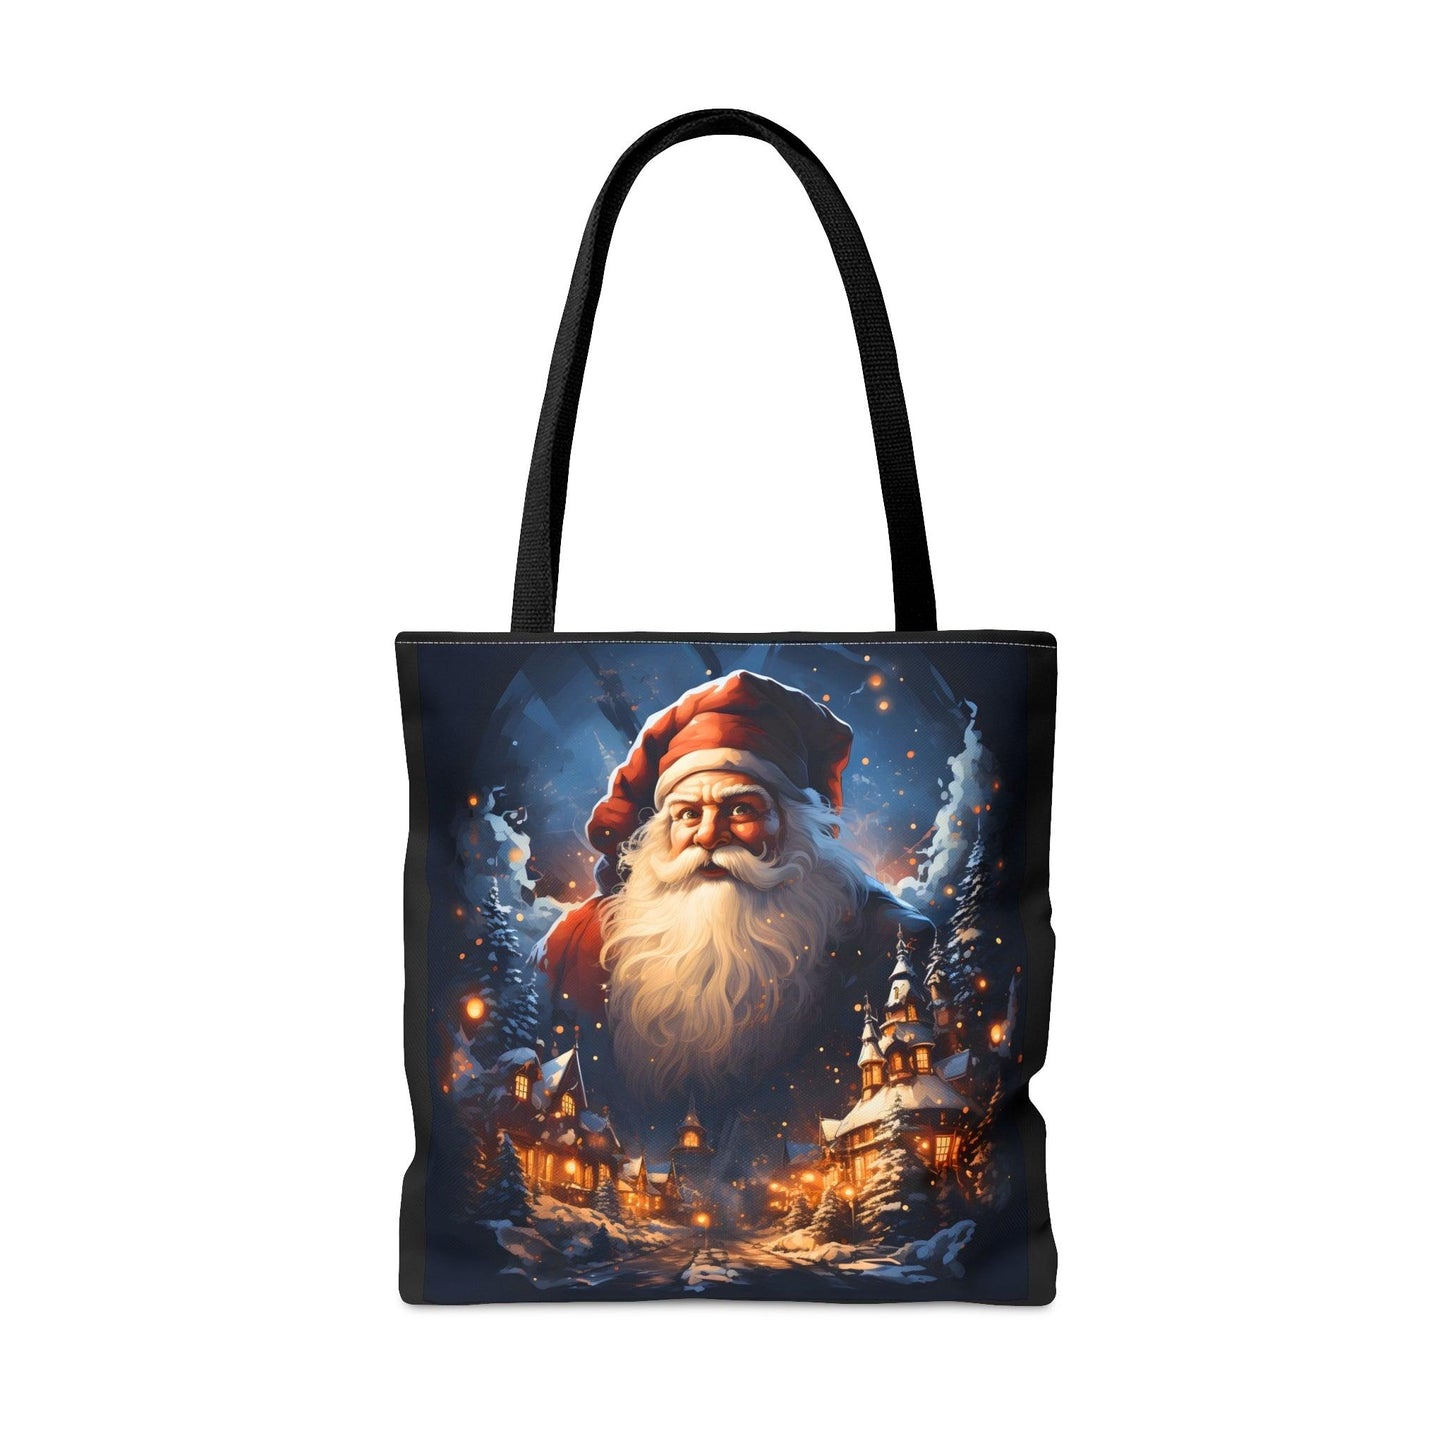 Santa Bag Christmas Bag Cute Christmas Bag  - Aesthetic Bag Christmas Village Bag, Mom Bag Canvas Bag Christmas Tote Bag Gift